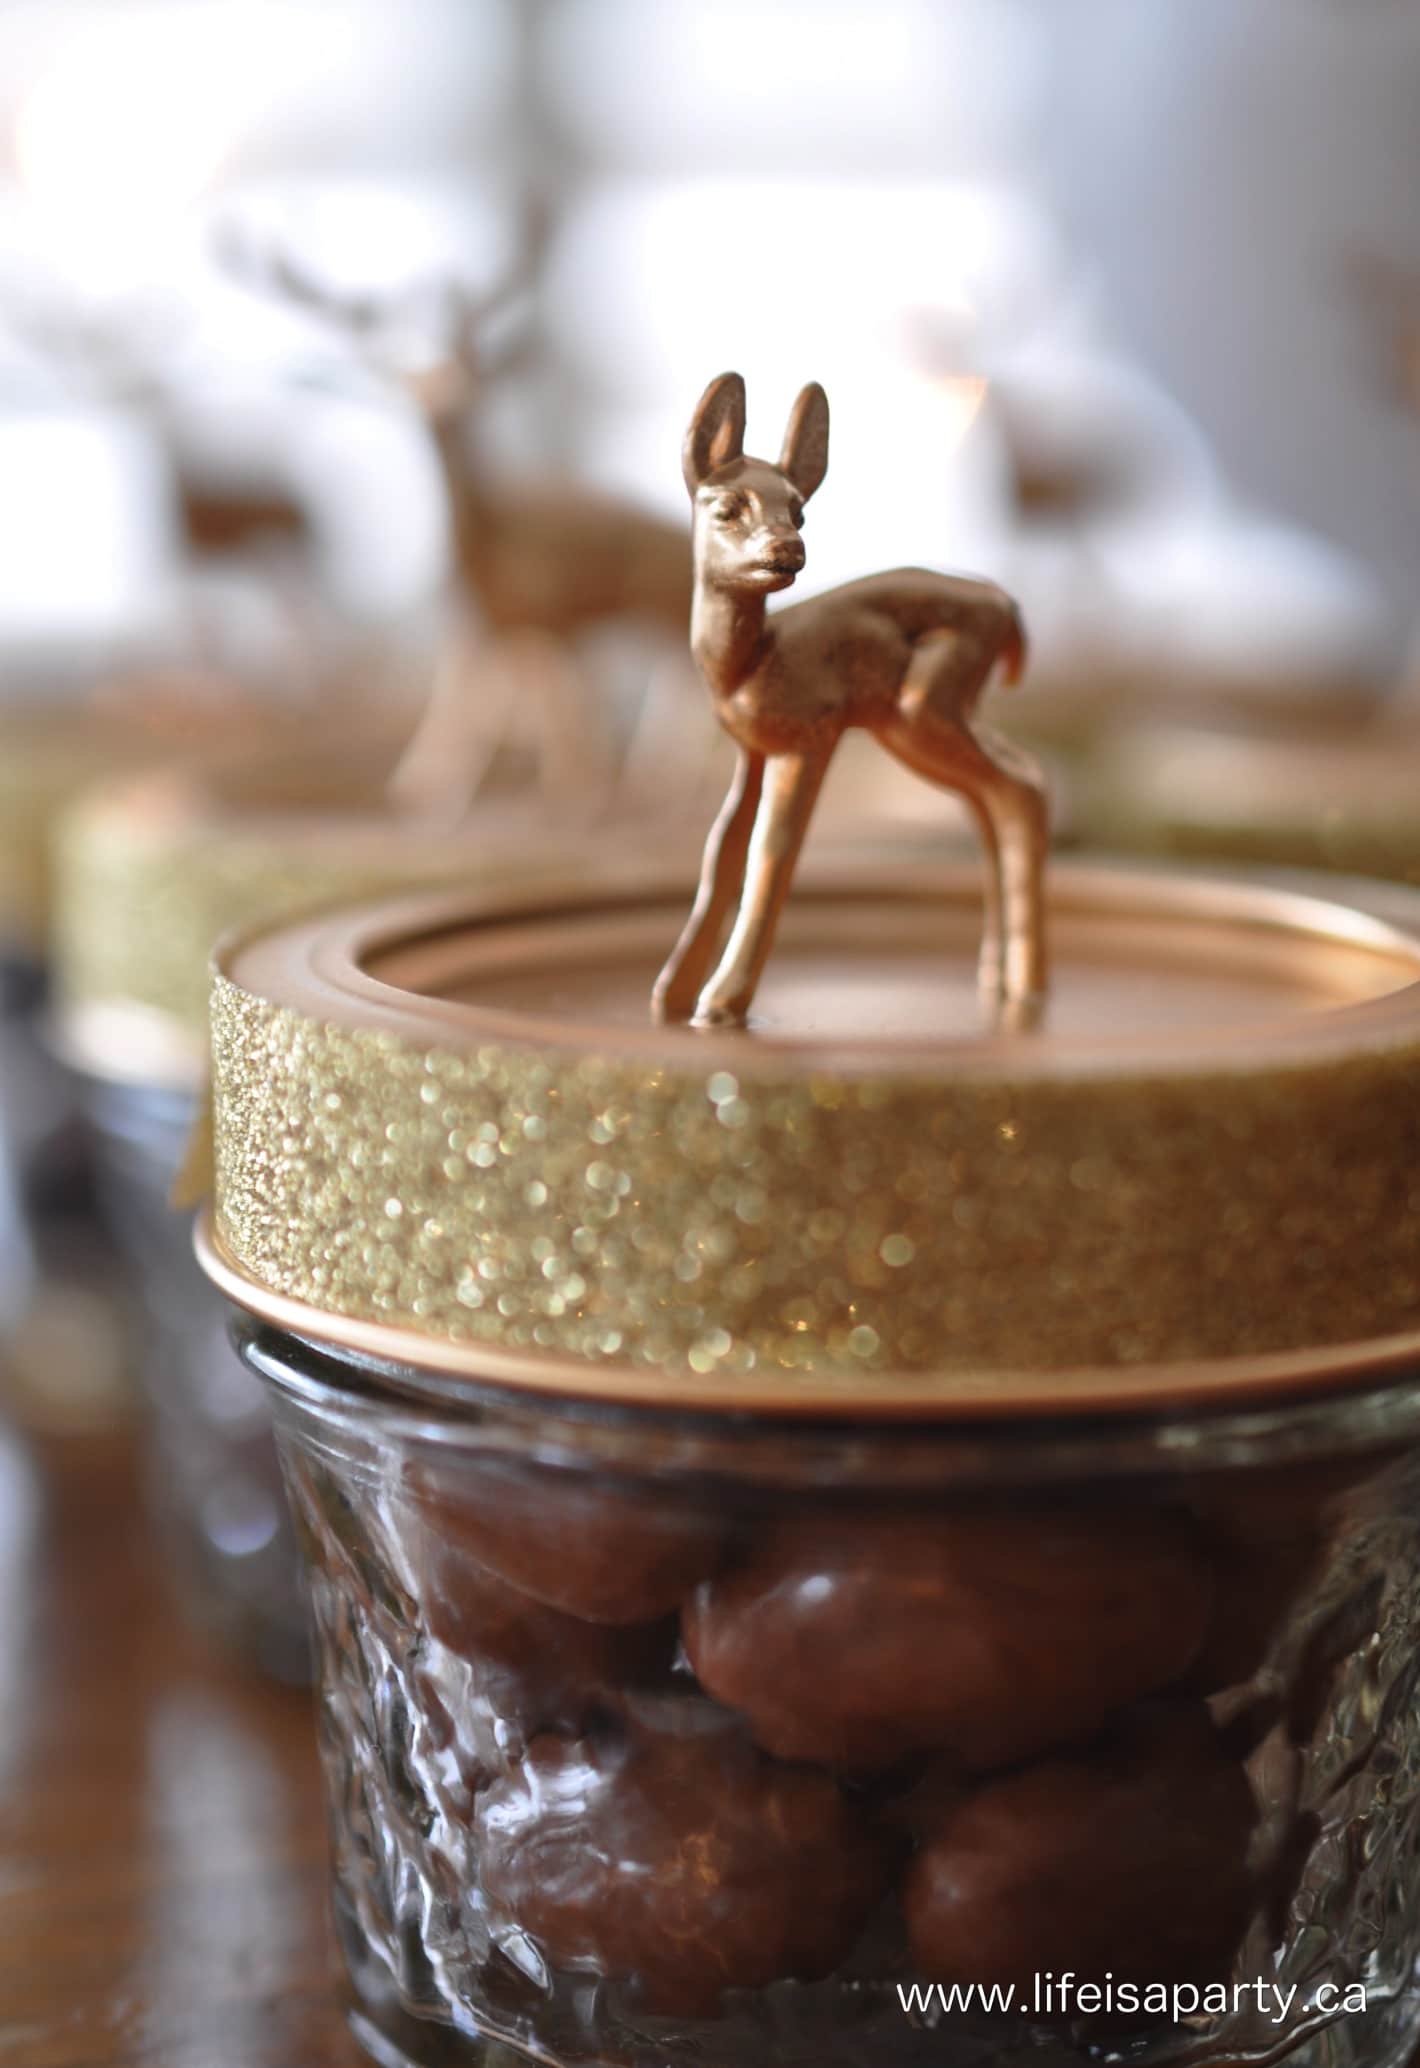 DIY deer treat jars